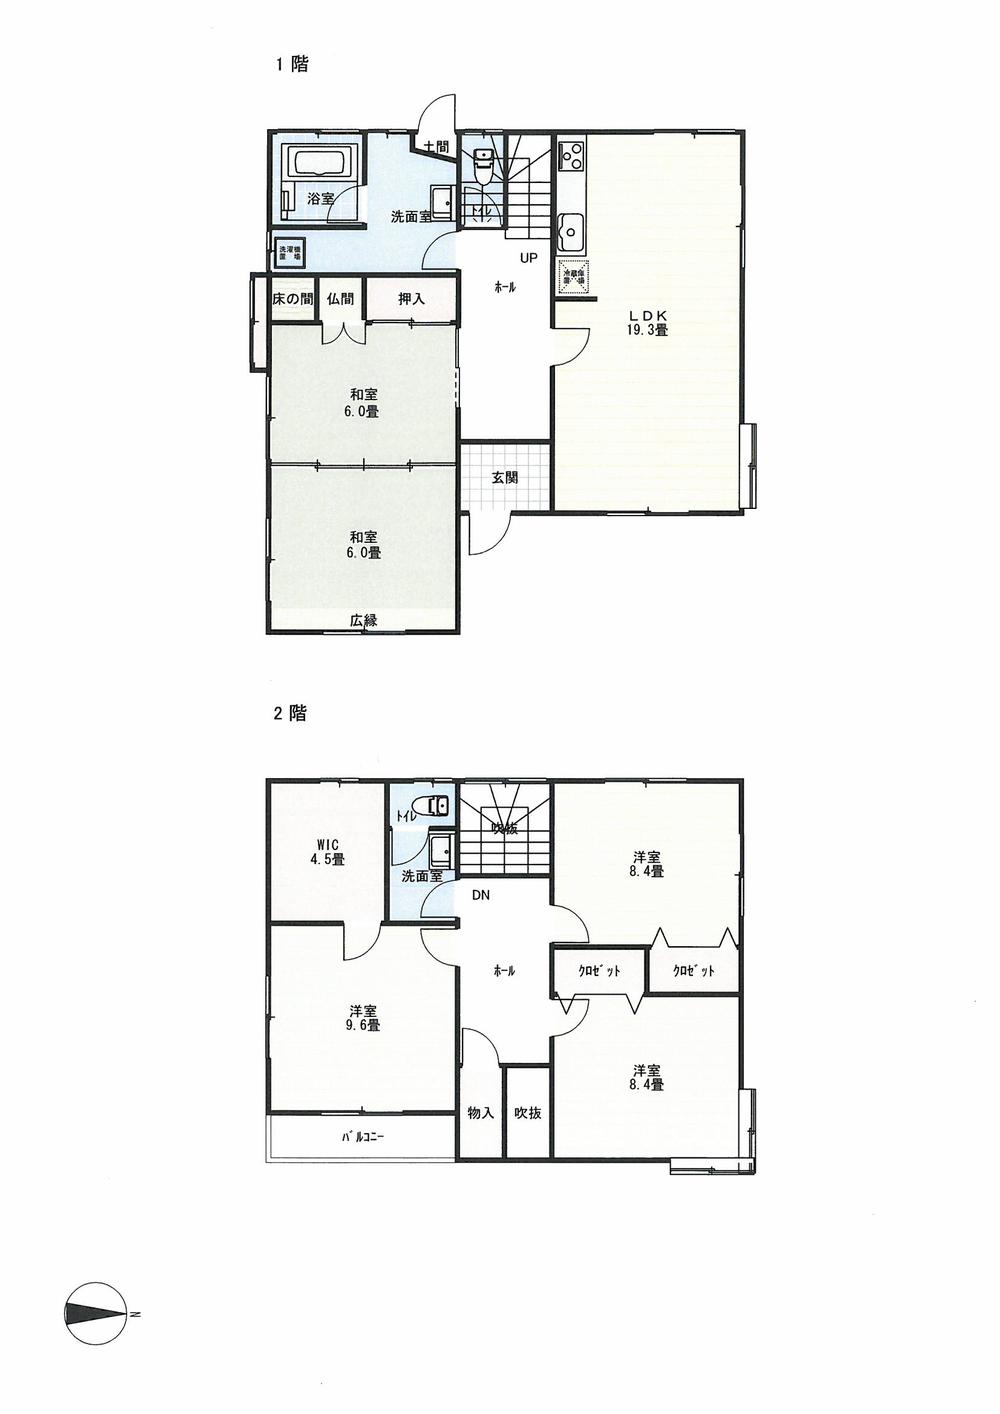 Floor plan. 23,980,000 yen, 5LDK + S (storeroom), Land area 249.5 sq m , Building area 164.7 sq m